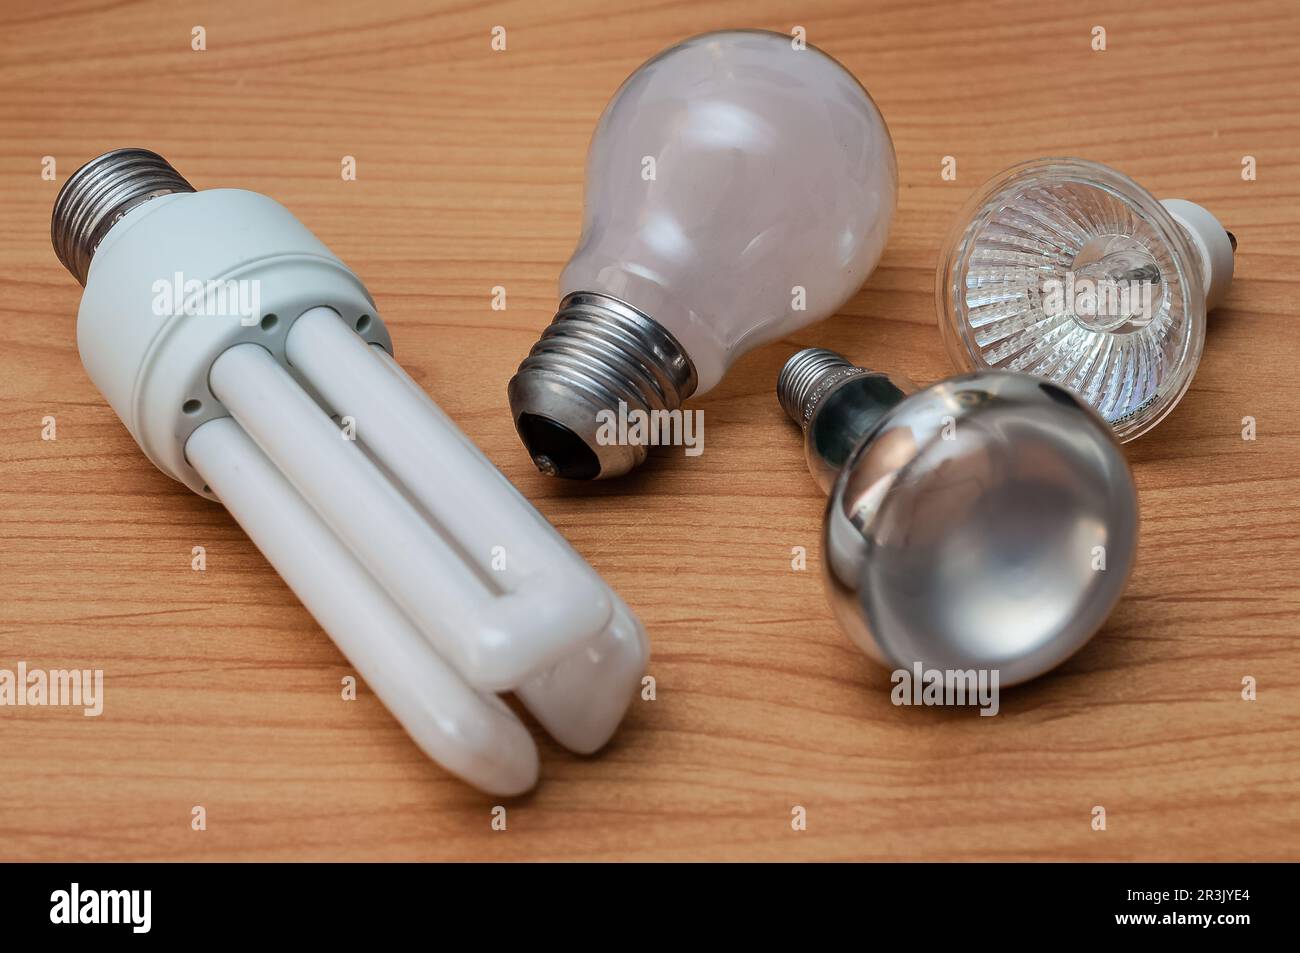 Fatturazione dell'elettricità - transizione energetica - varie lampadine Foto Stock